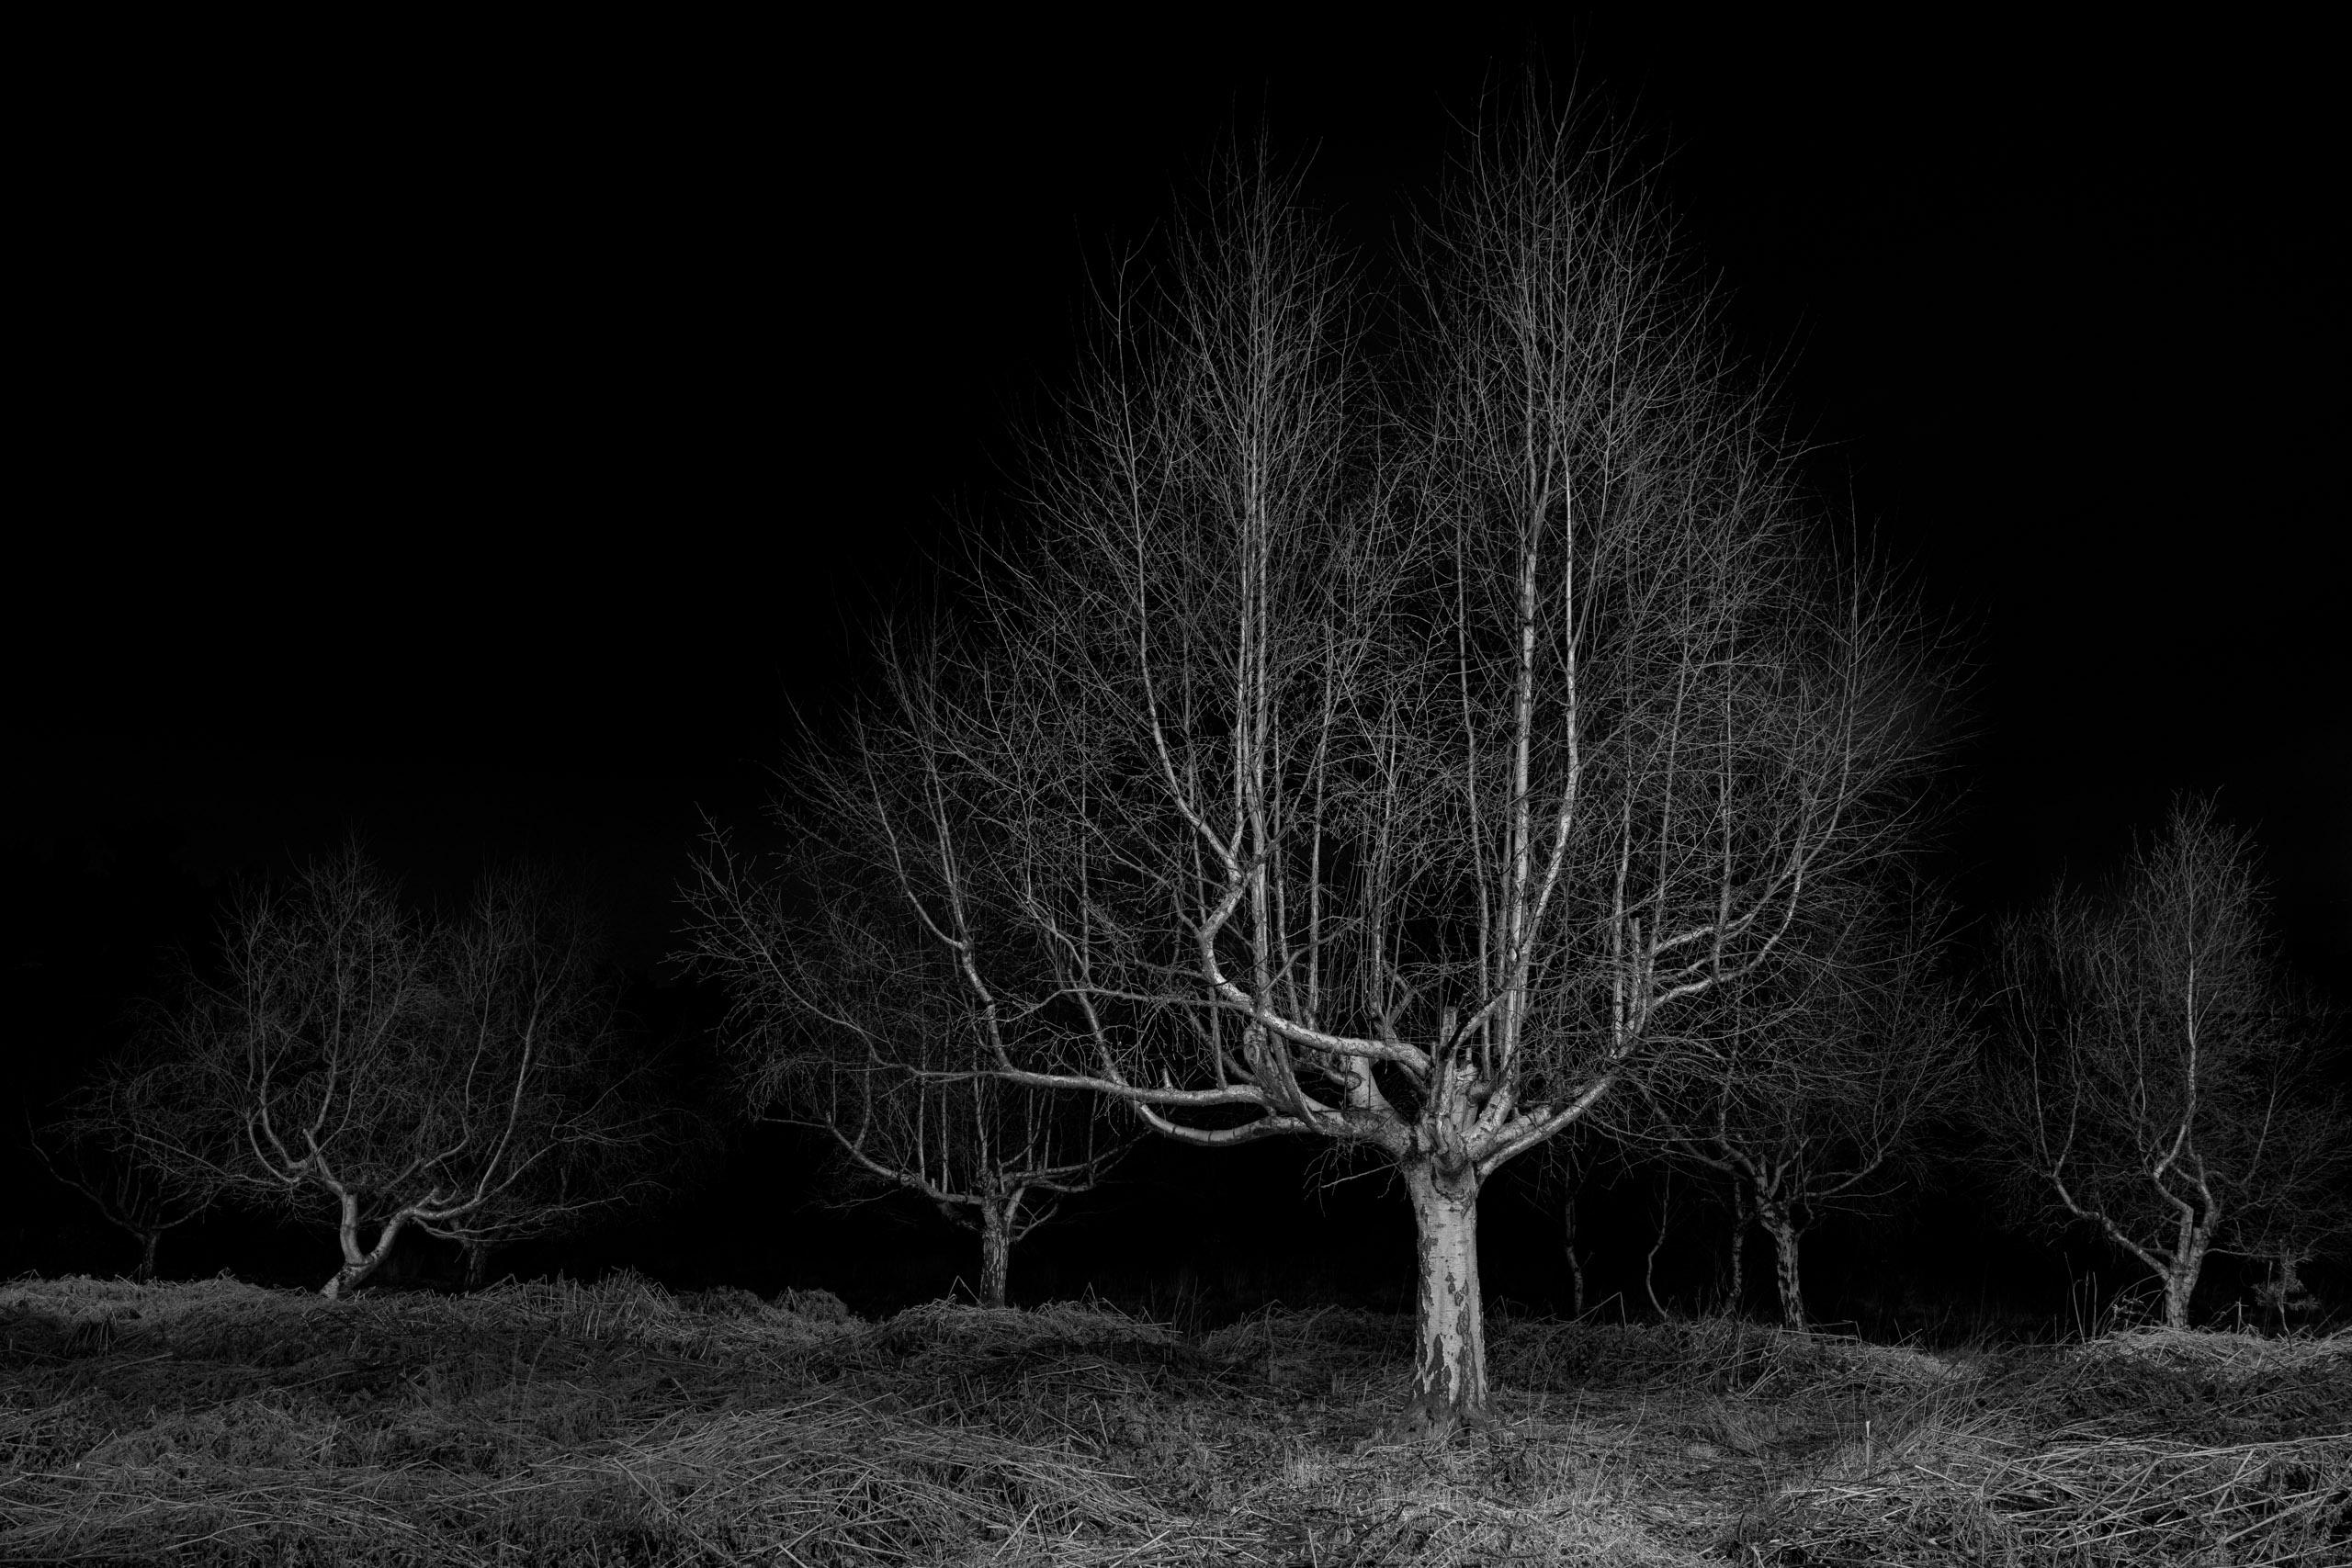 Landscape Photograph Jasper Goodall - Gathering, Twilight #19, bouleau argenté, imprimé paysage noir et blanc